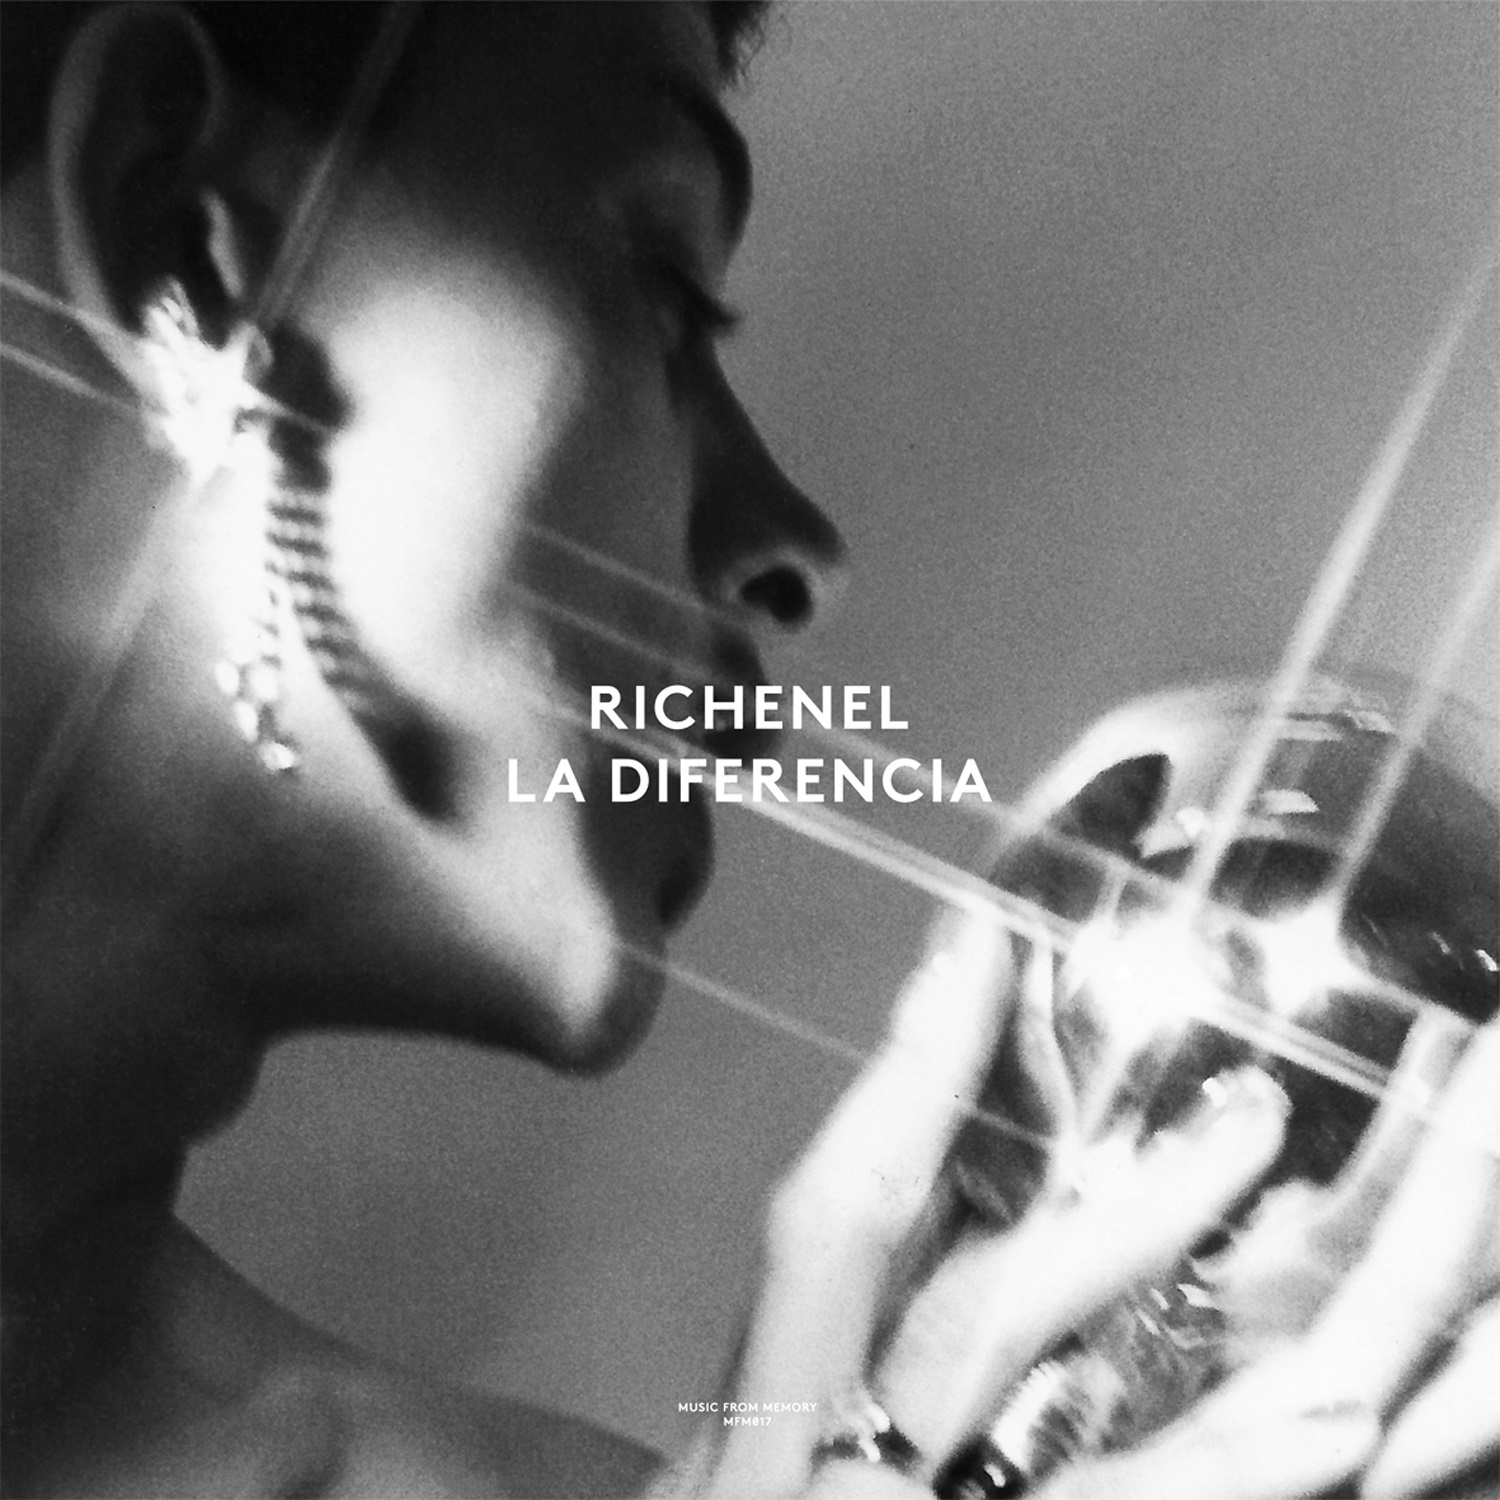 Дебютный альбом легенды амстердамского андерграунда Richenel "La Diferencia" получил вторую жизнь в виде EP